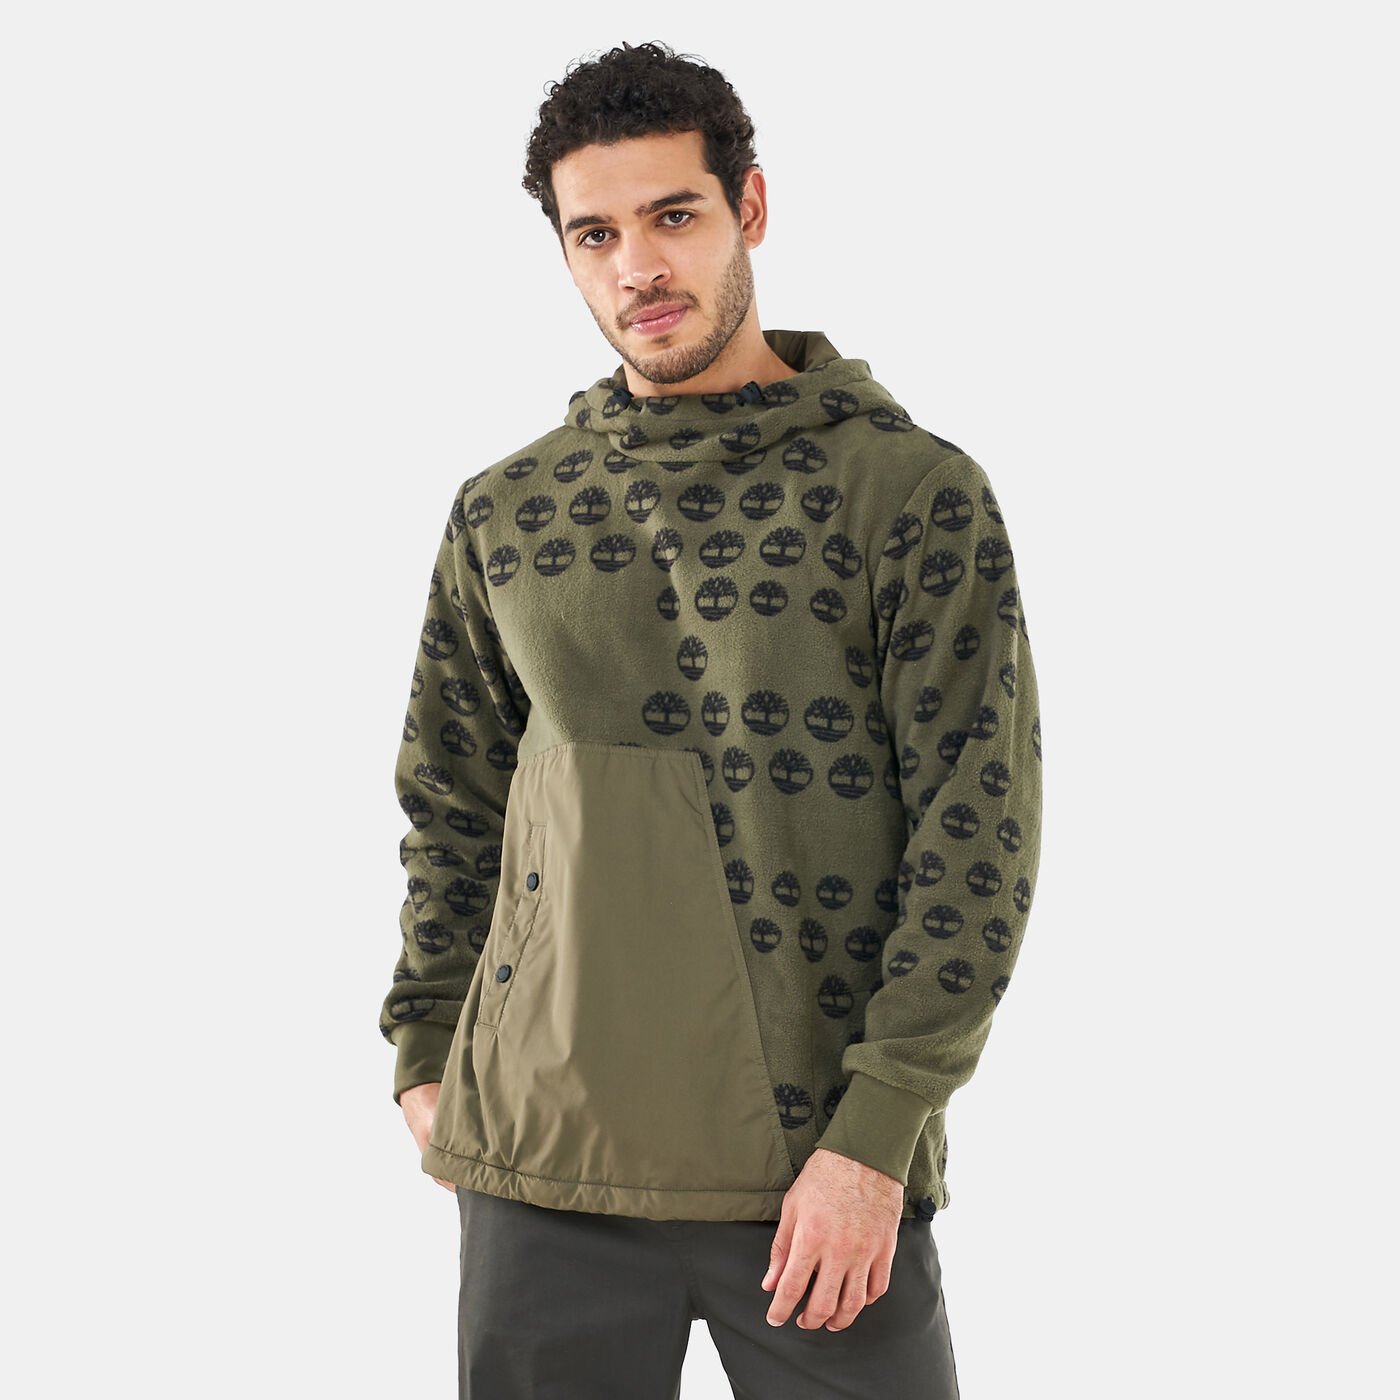 Men’s Fleece Sweatshirt